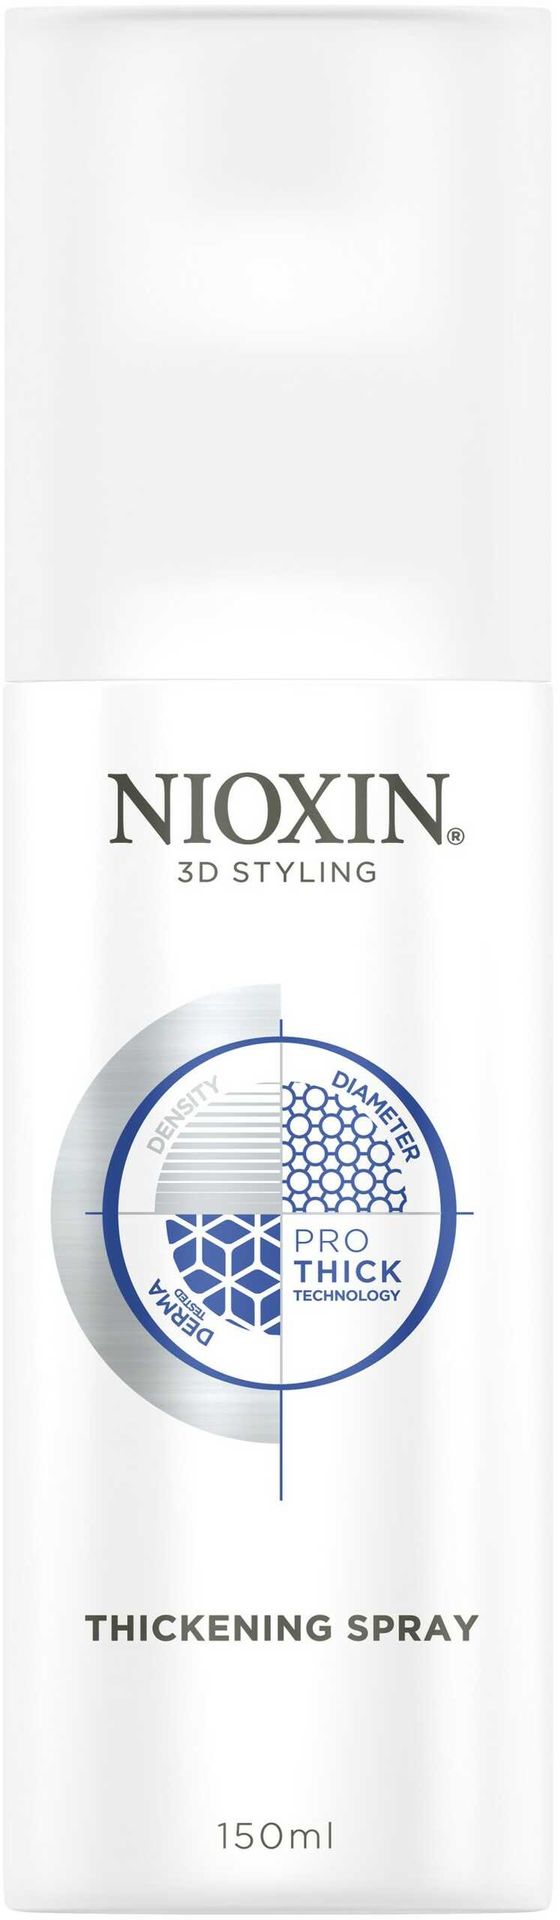 Nioxin 3D Styling Thickening Spray pogrubiający włosy 150ml 15247